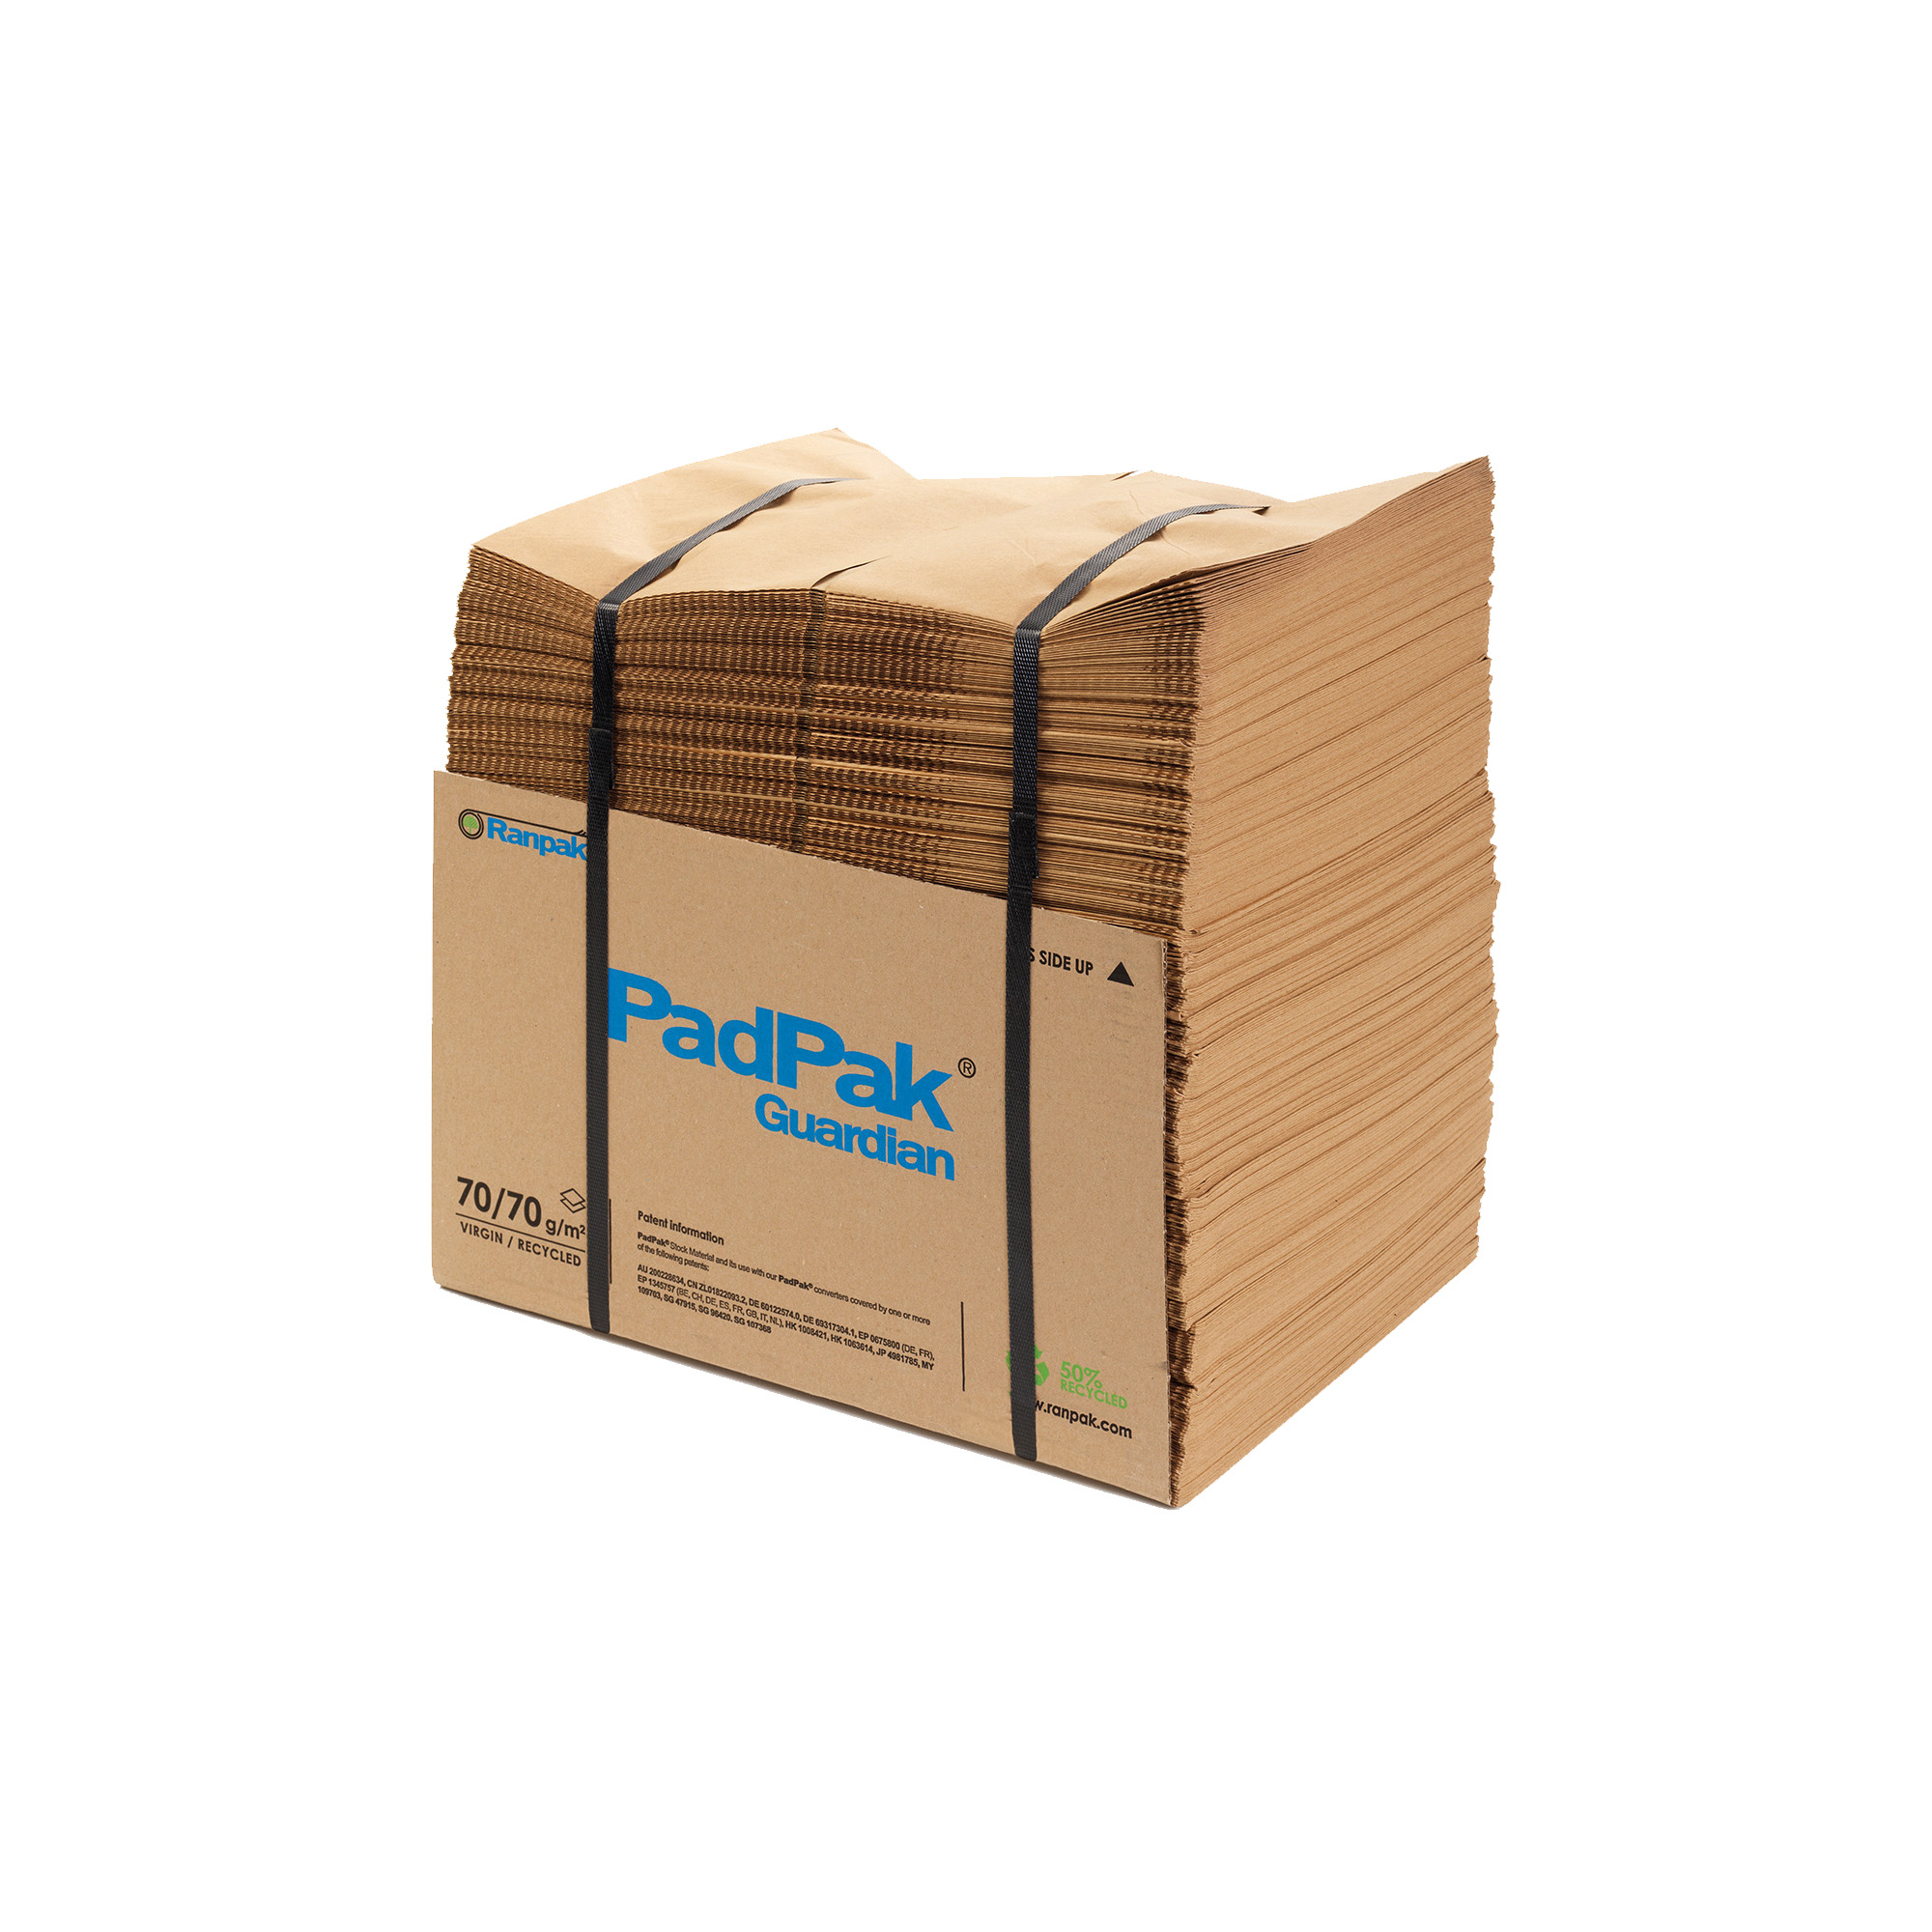 PadPak Guardian Papier 2-lagig, 70/70 g/m², 38cm breit, 180lfm.